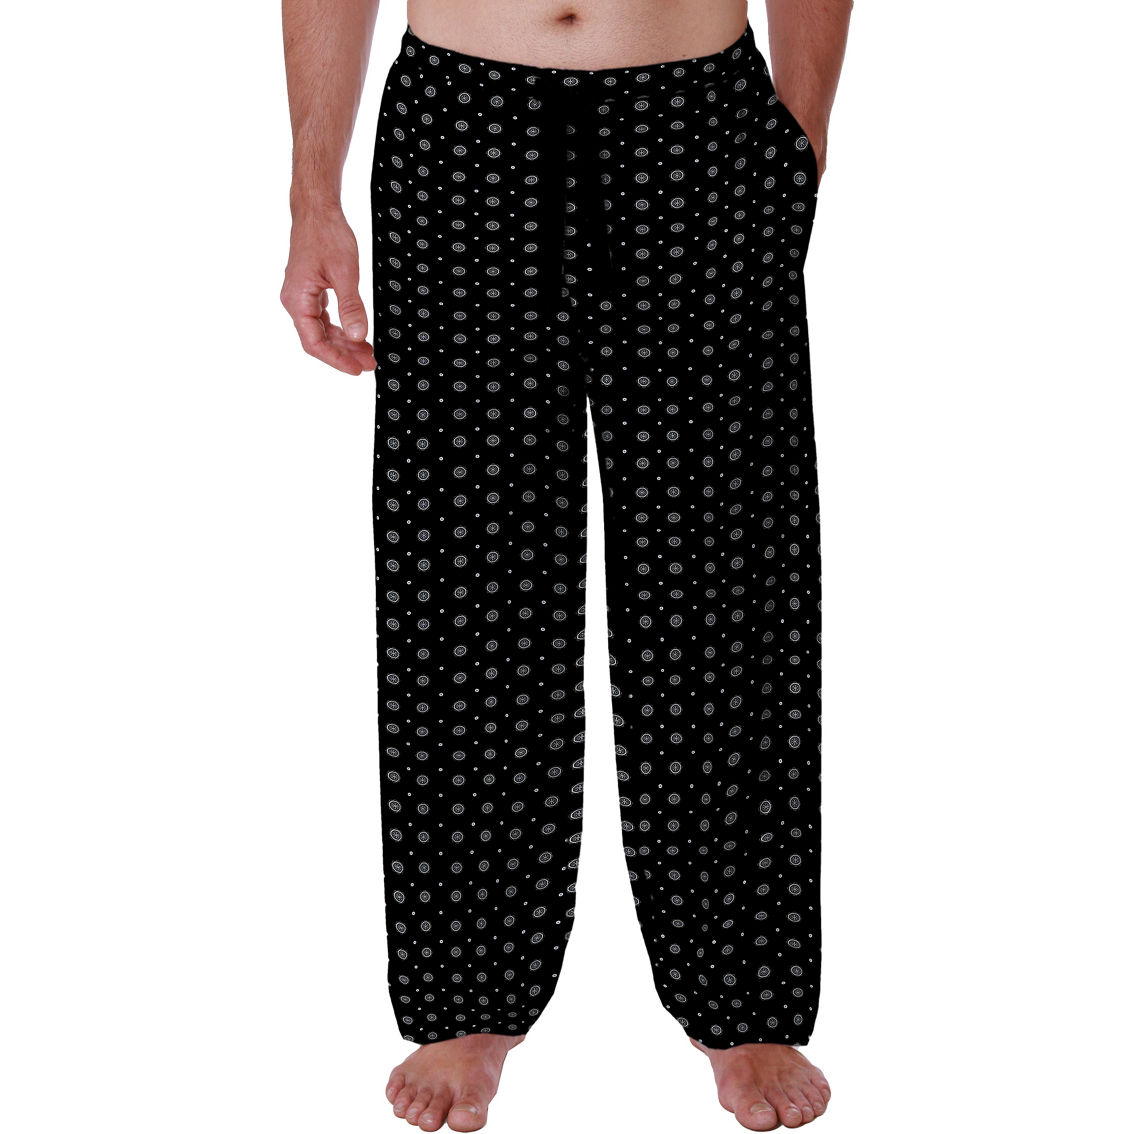 Izod Printed Rayon Sleep Pants | Pajamas & Robes | Clothing ...